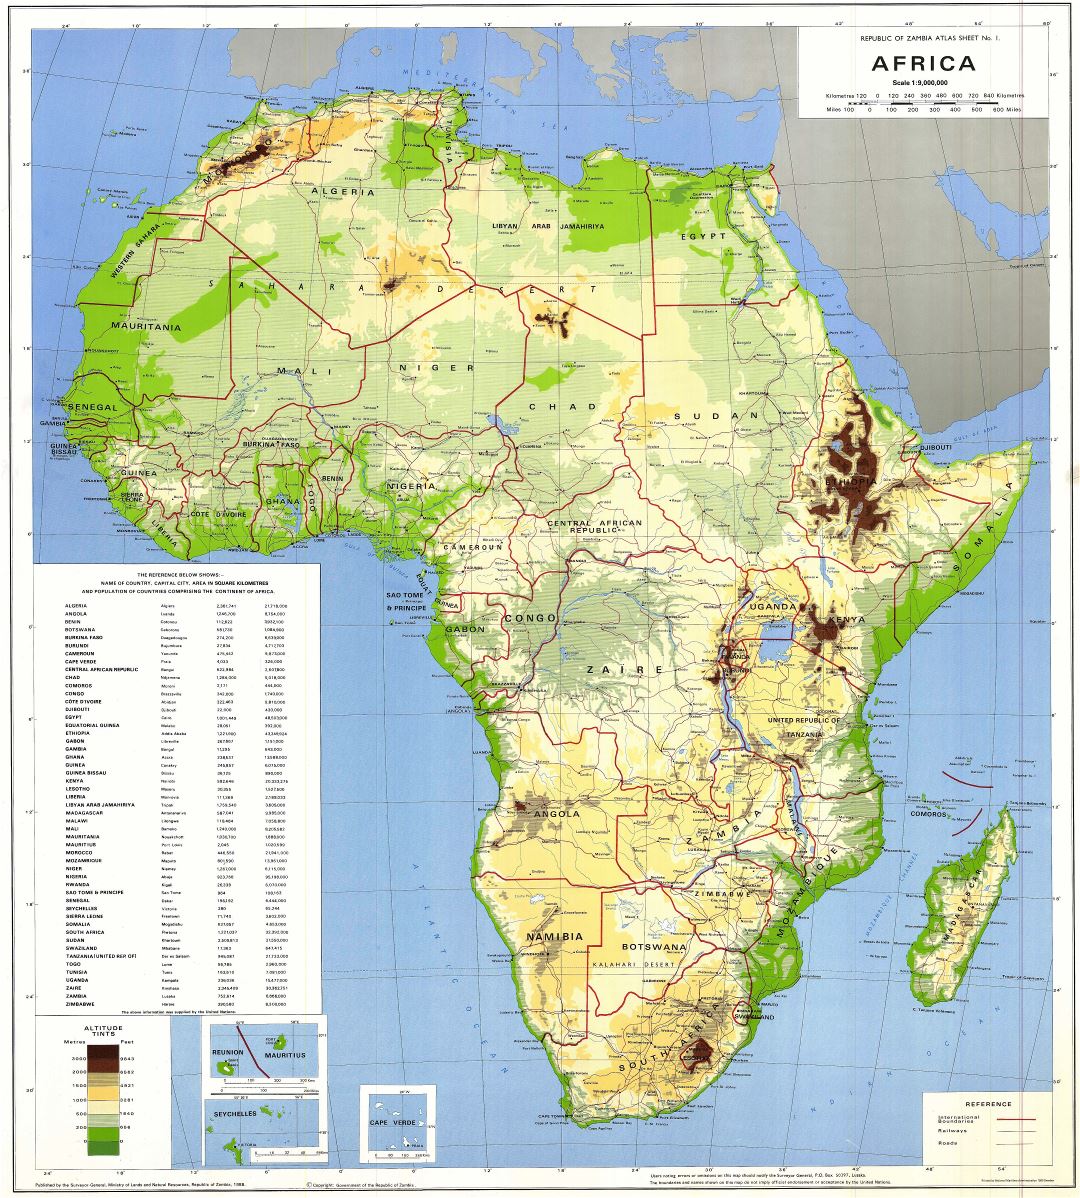 Mapa físico y político detallada a gran escala de África